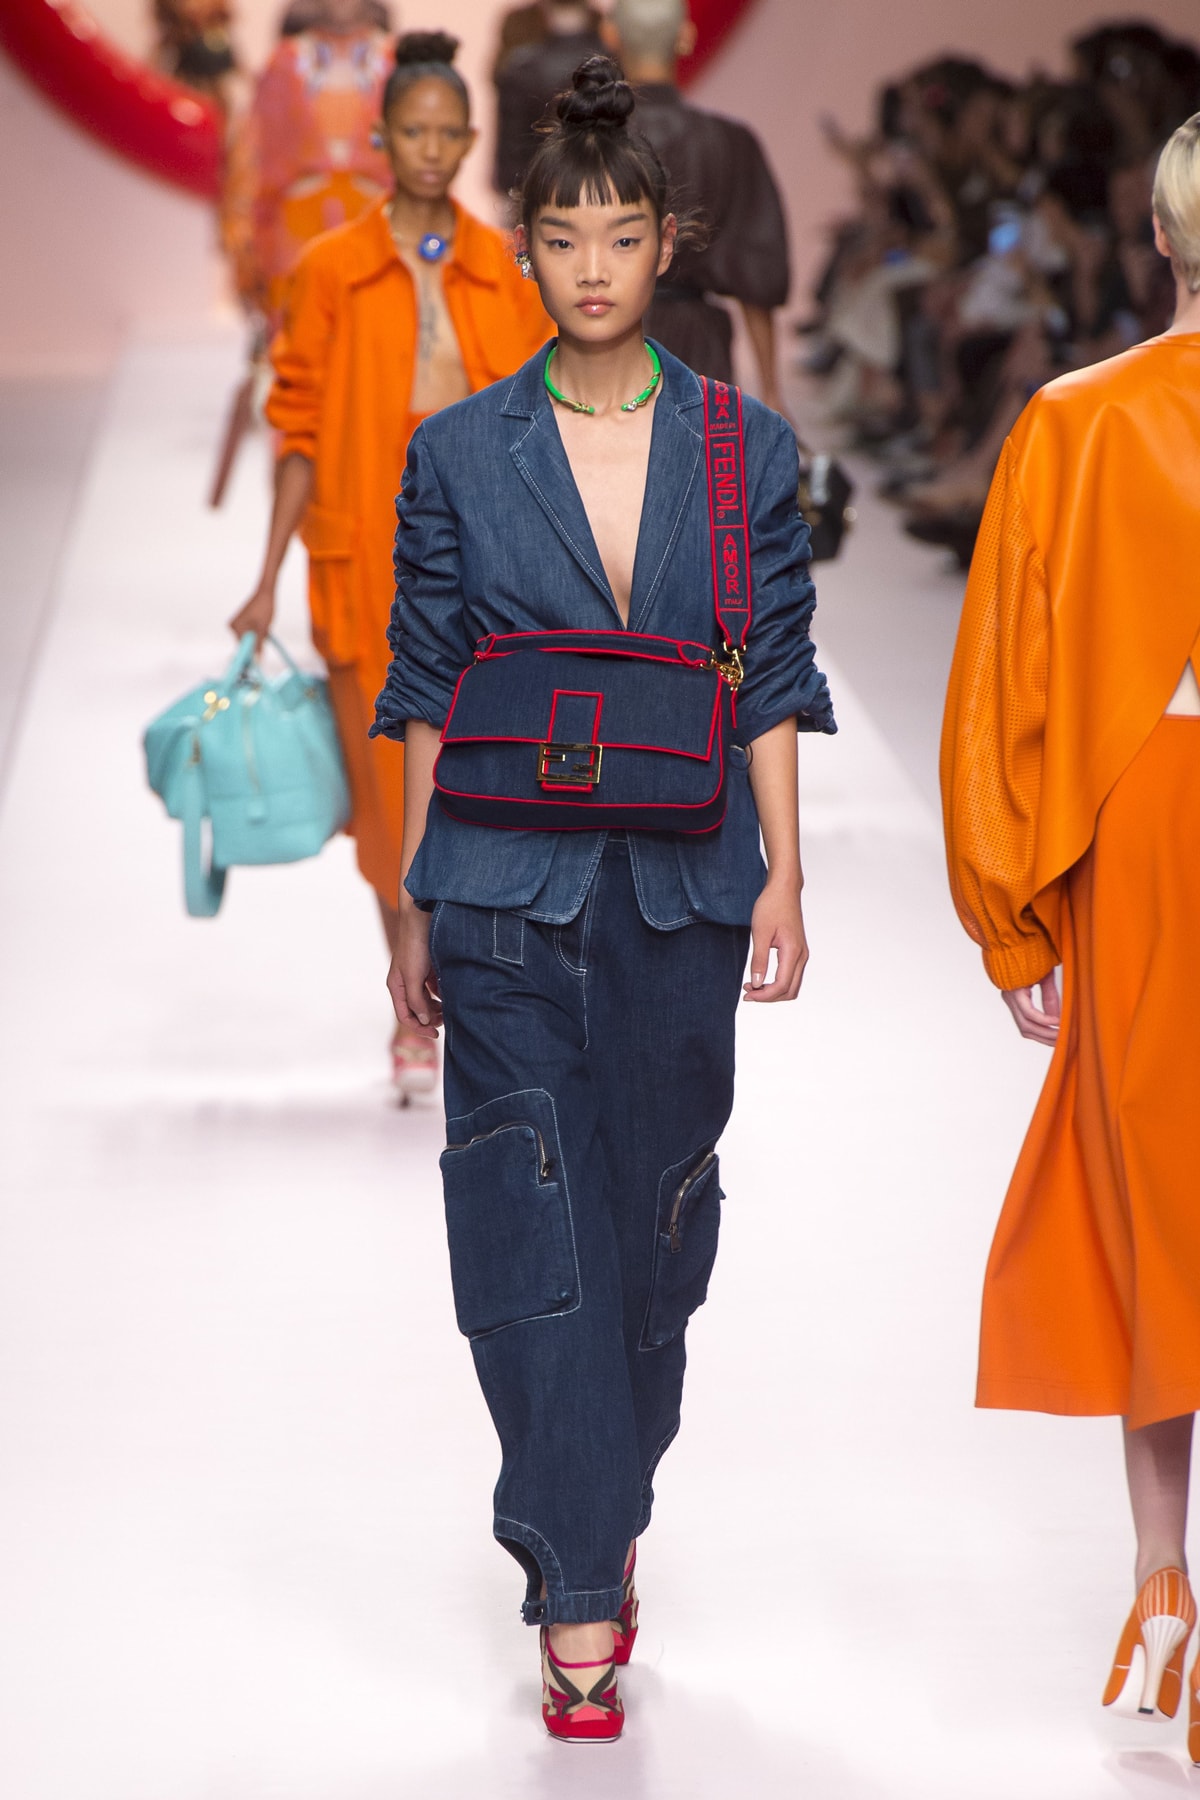 Fendi Karl Lagerfeld Spring Summer 2019 Milan Fashion Week Show Collection Denim Jacket Pants Handbag Red Blue